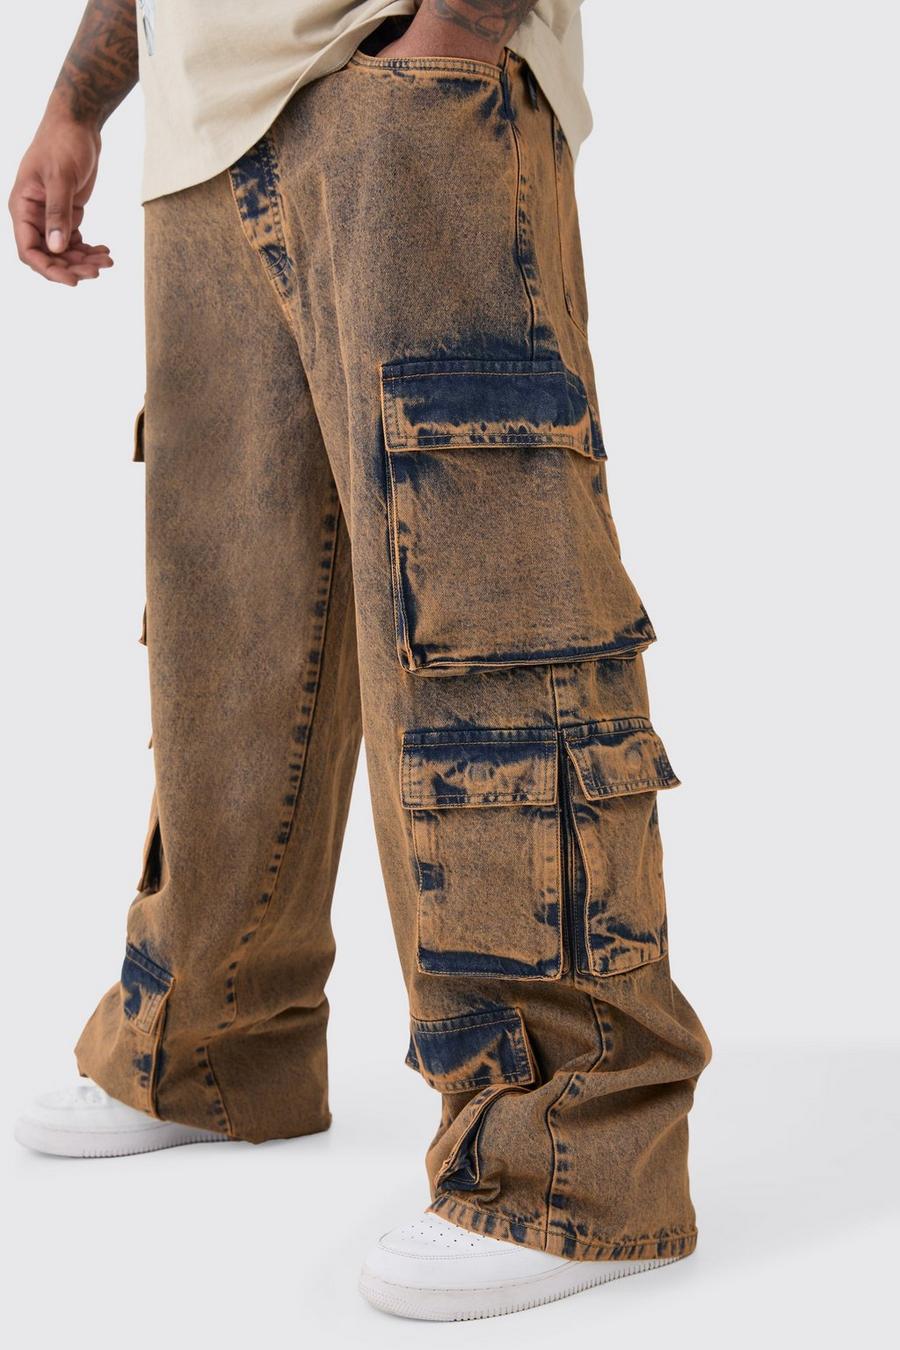 Jeans Cargo Plus Size extra comodi in lavaggio acido, Antique wash